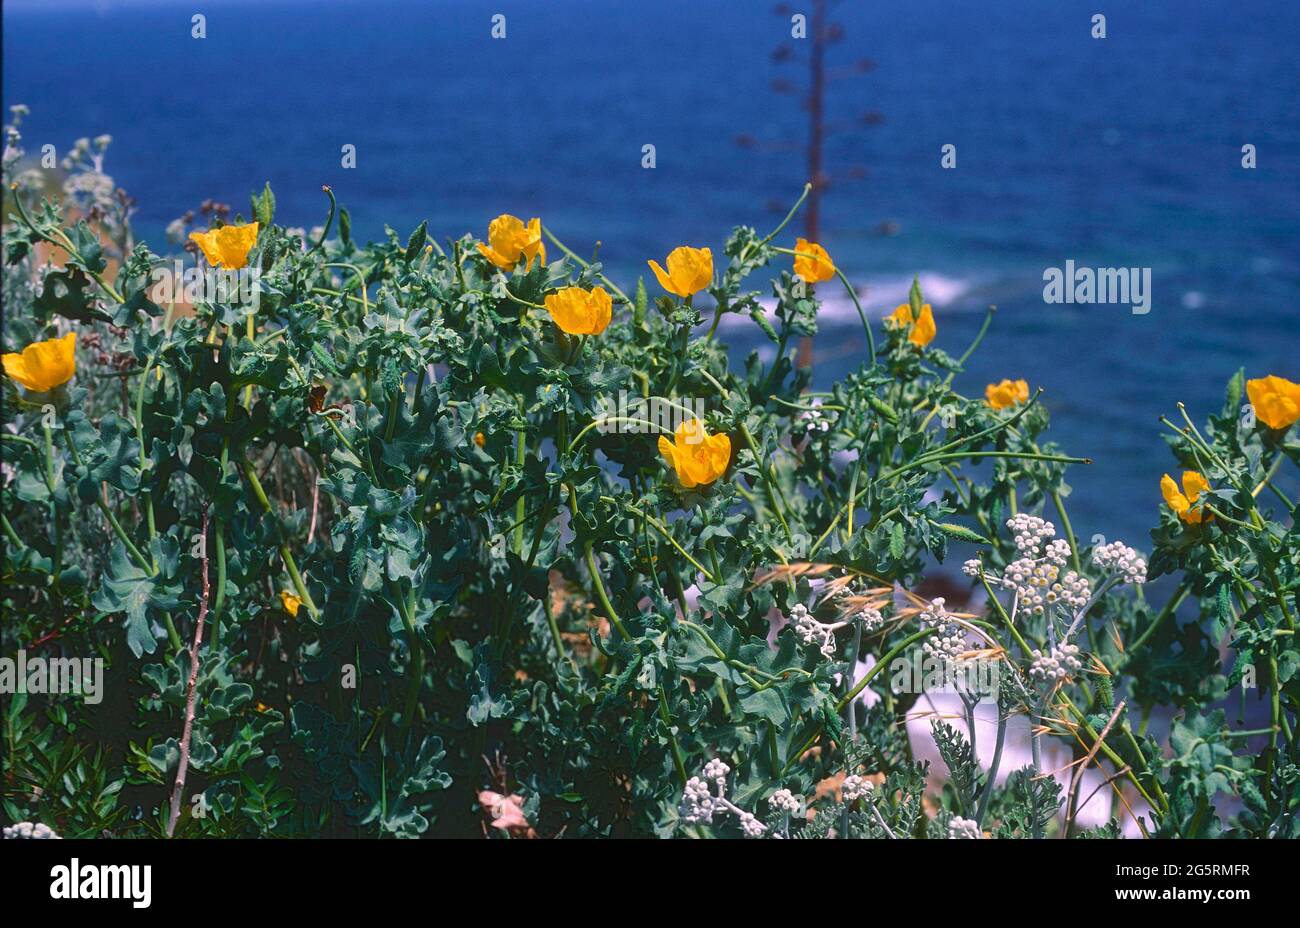 Gelber Hornmohn, Glaucium flavum, Papaveraceae, Bestand, blühend, Blume, Pflanze, Mittelmeerküste, Spanien Stock Photo